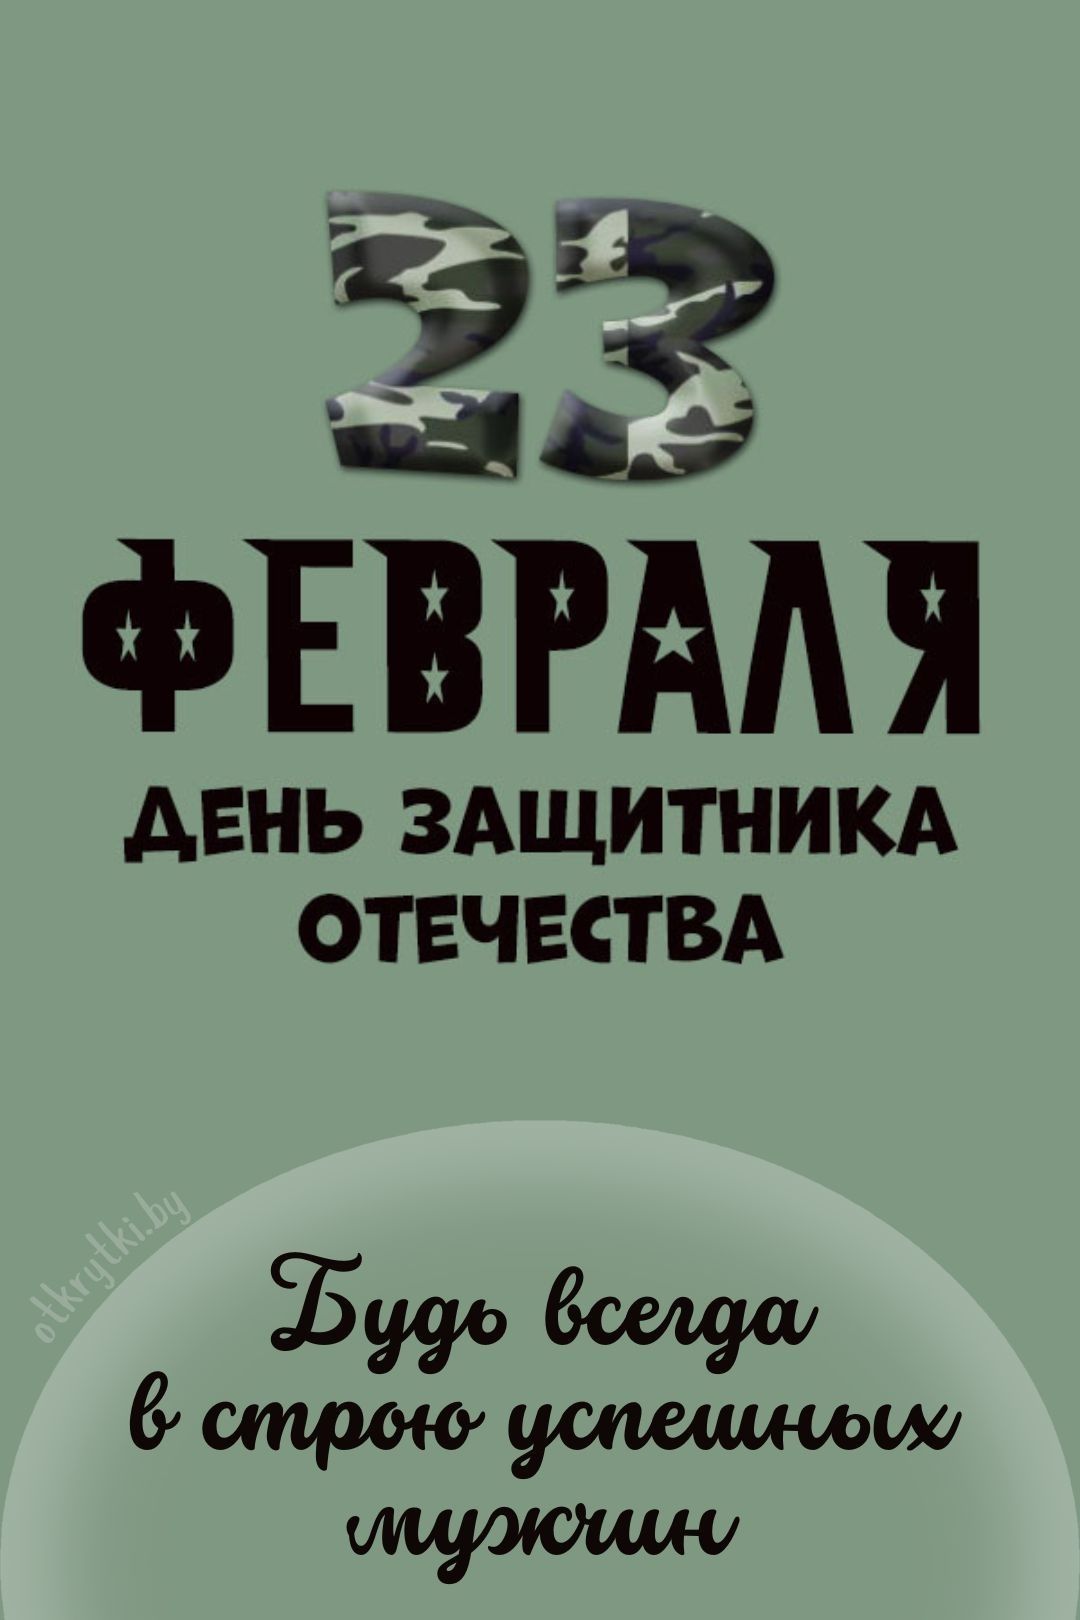 Красивая открытка на 23 февраля день защитника отечества